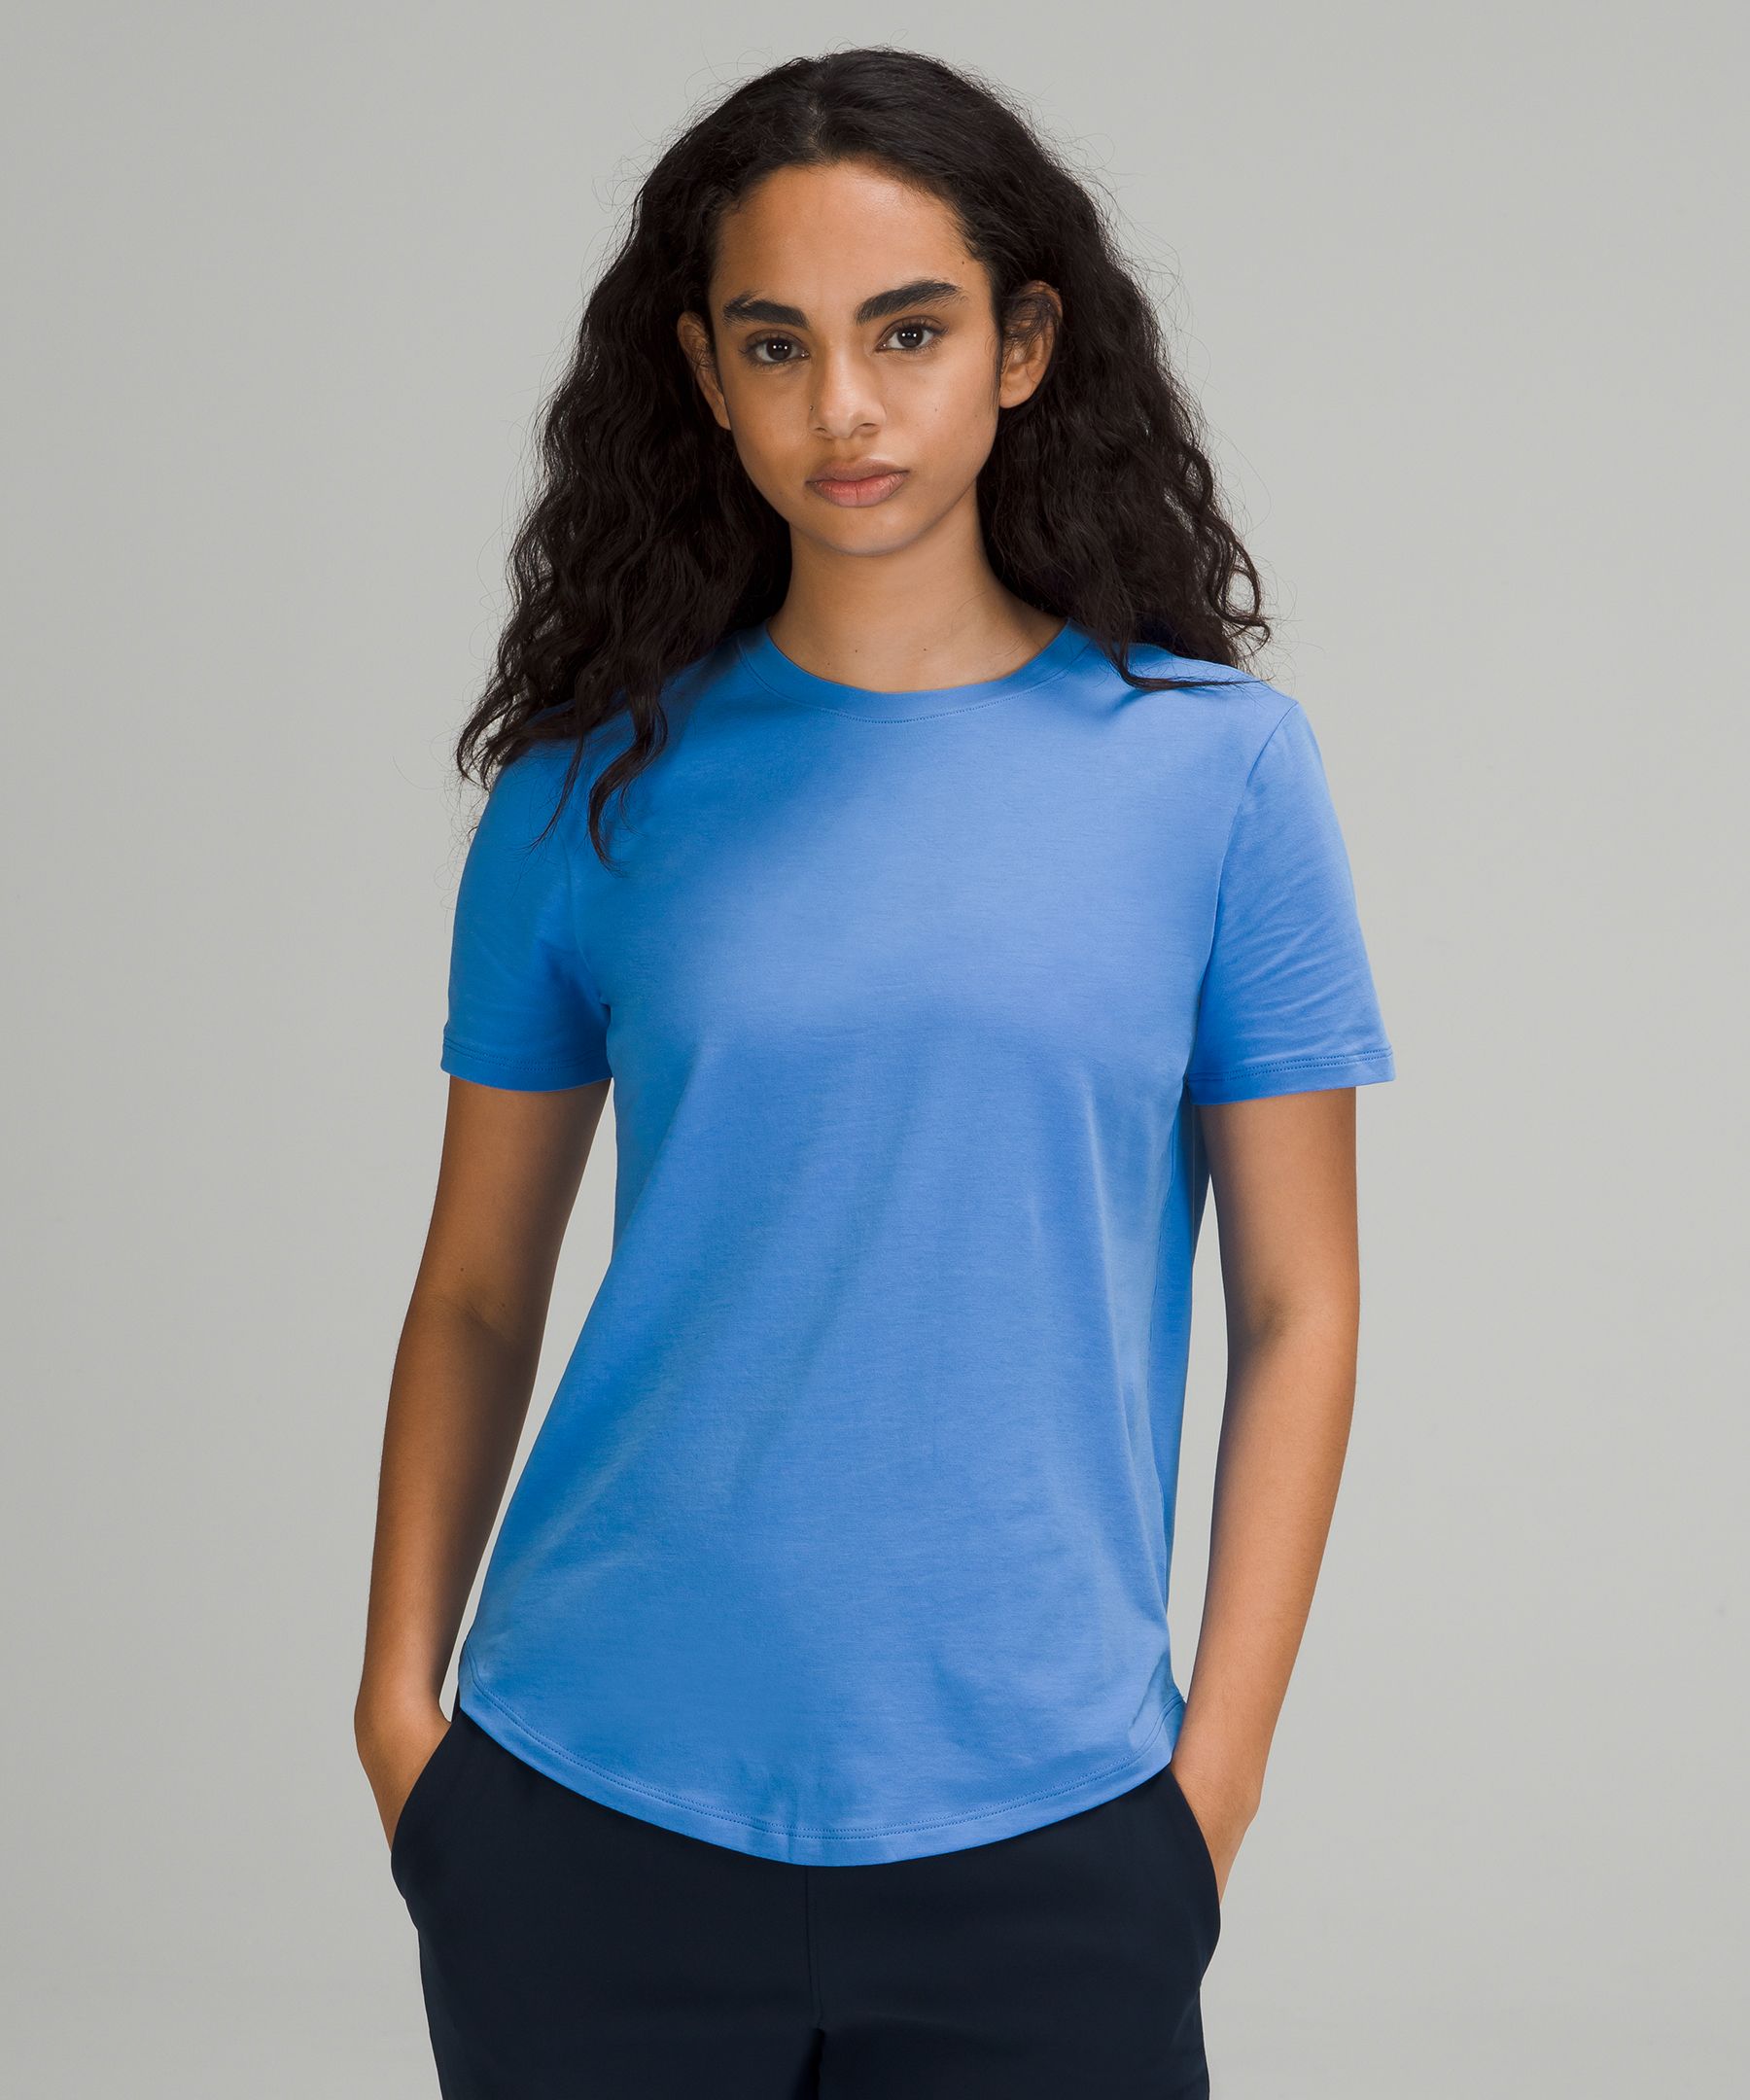 Lululemon Love Crew Short Sleeve T-shirt In Blue